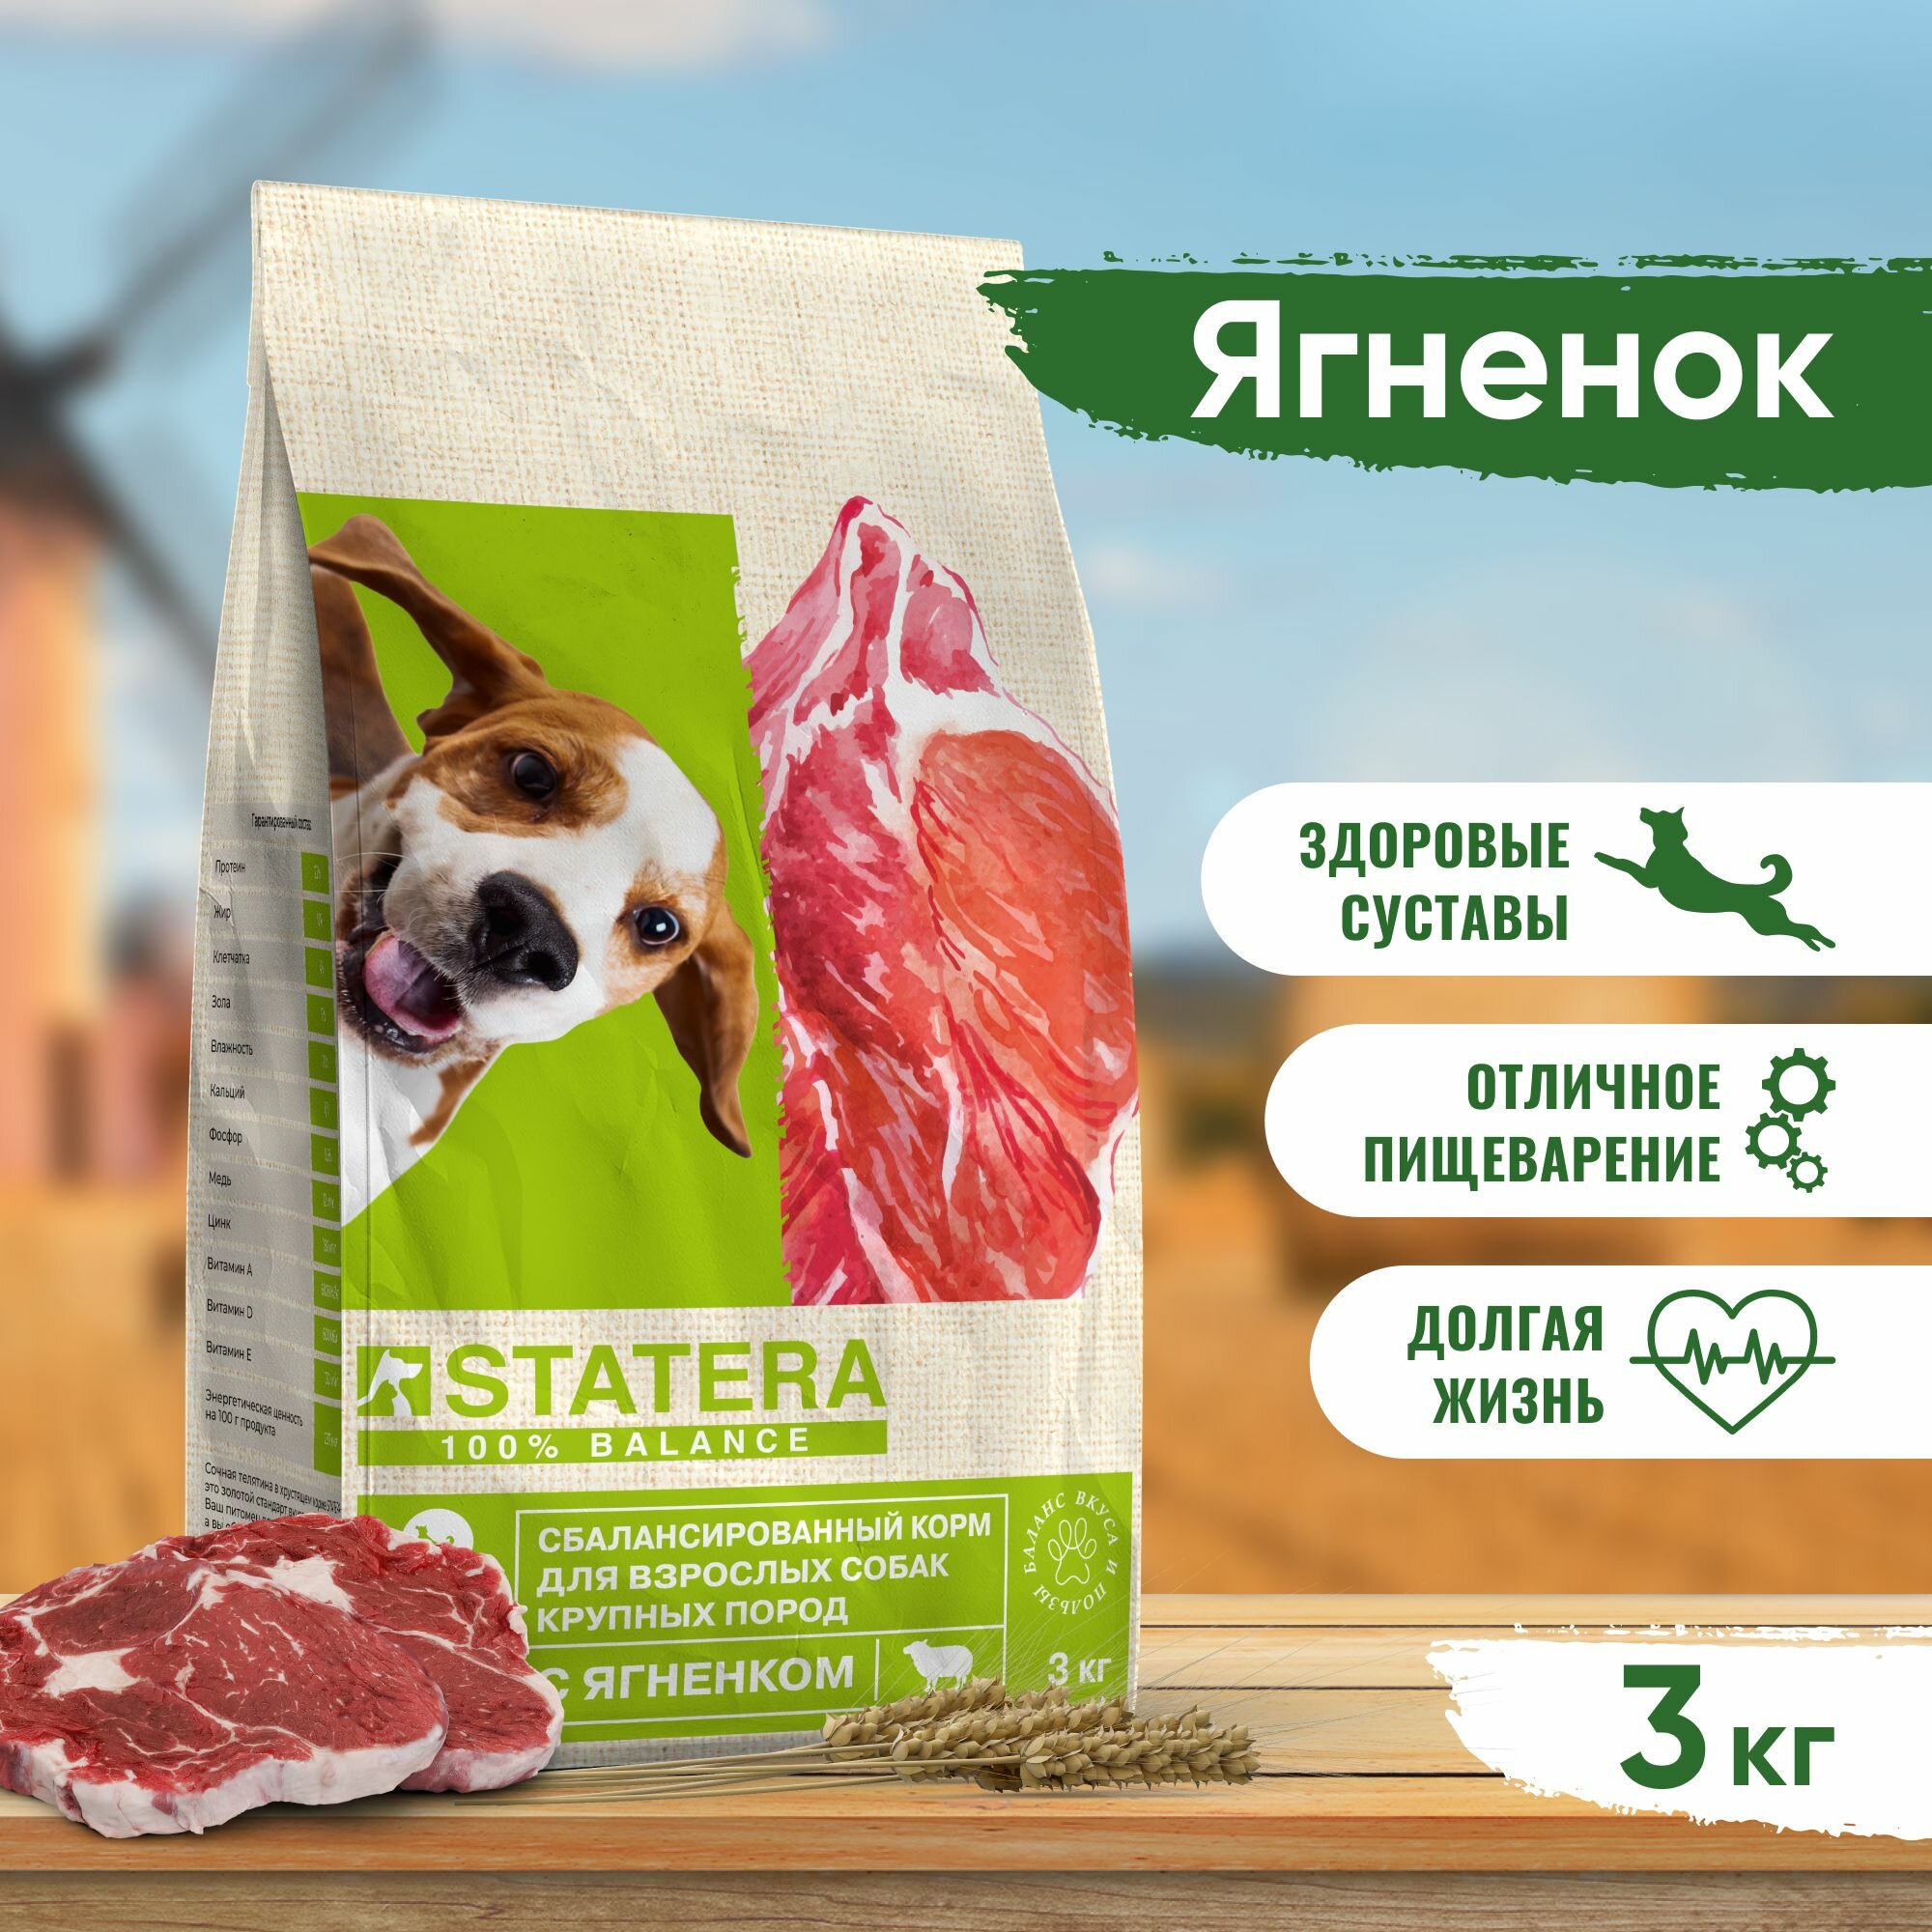 Statera - Сухой корм для взрослых собак крупных пород, с Ягненком mSTA042 3 кг